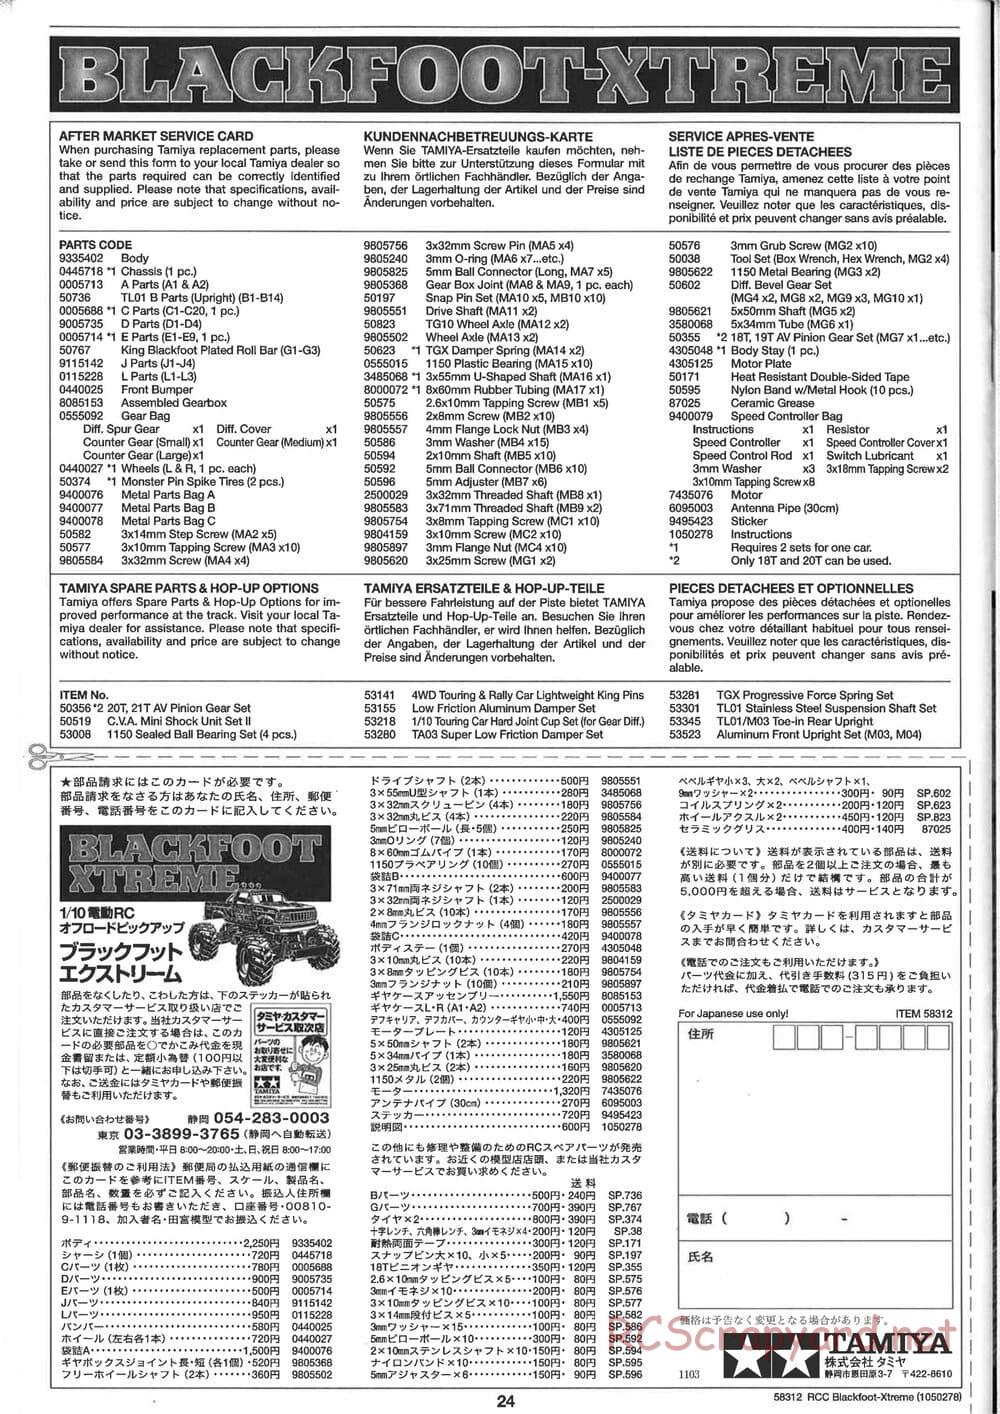 Tamiya - Blackfoot Xtreme - WT-01 Chassis - Manual - Page 24